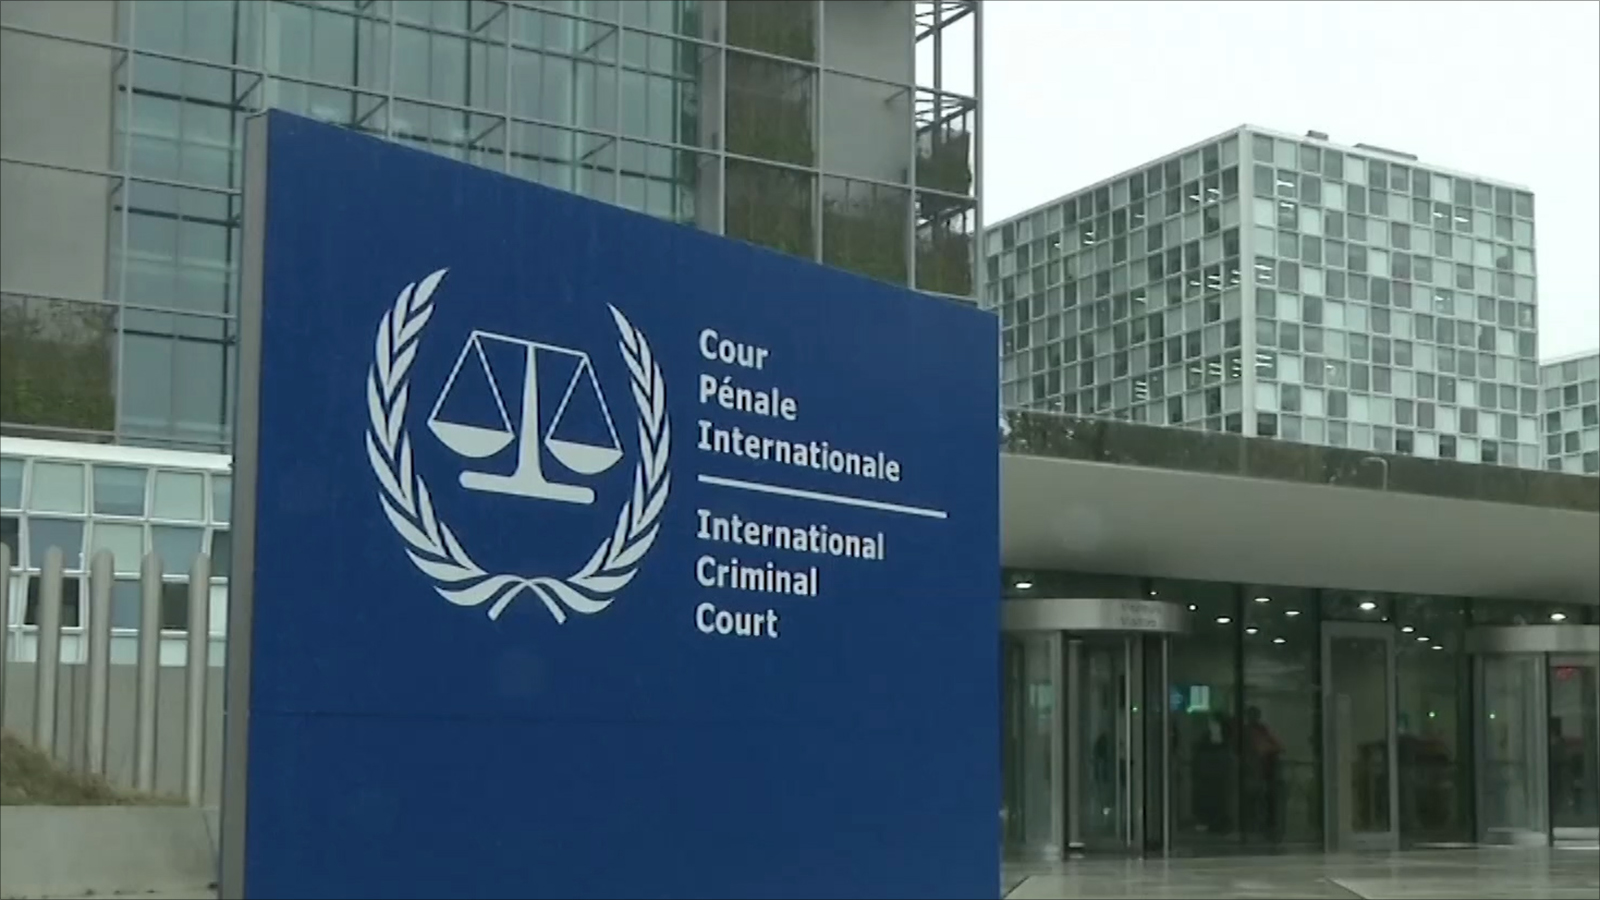  المحكمة الجنائية الدولية تصدر تحذيرا إلى الأفراد الذين يهدّدون بالانتقام منها أو من موظفيها،